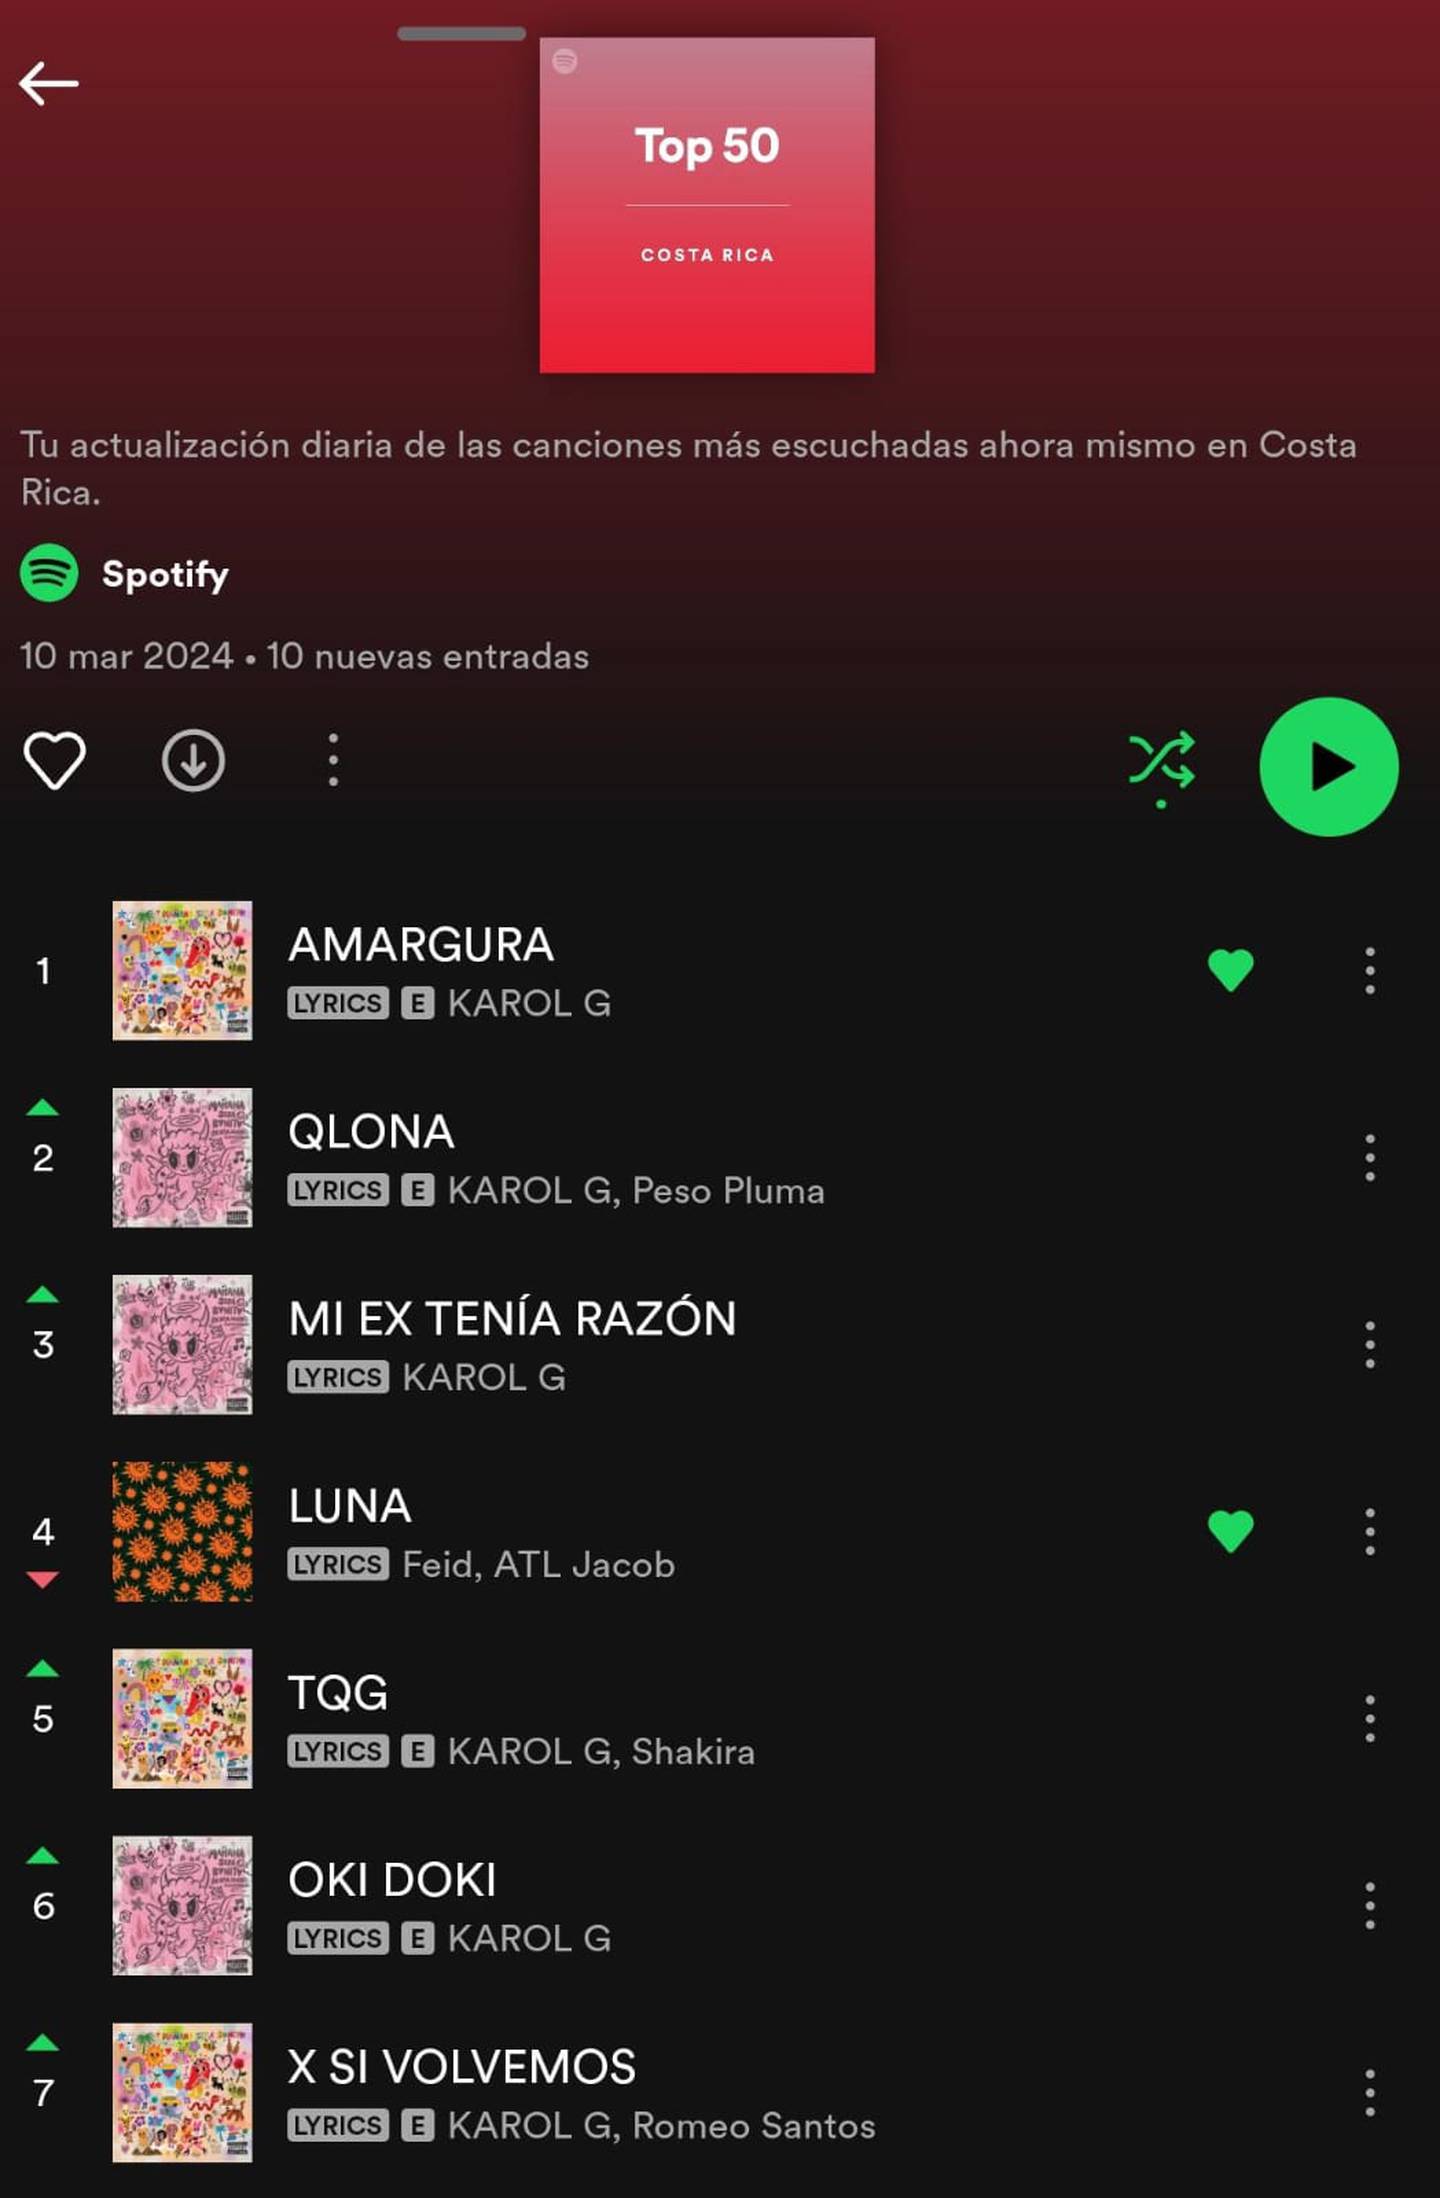 Concierto de Karol G causó locuras en el top 50 de Spotify Costa Rica